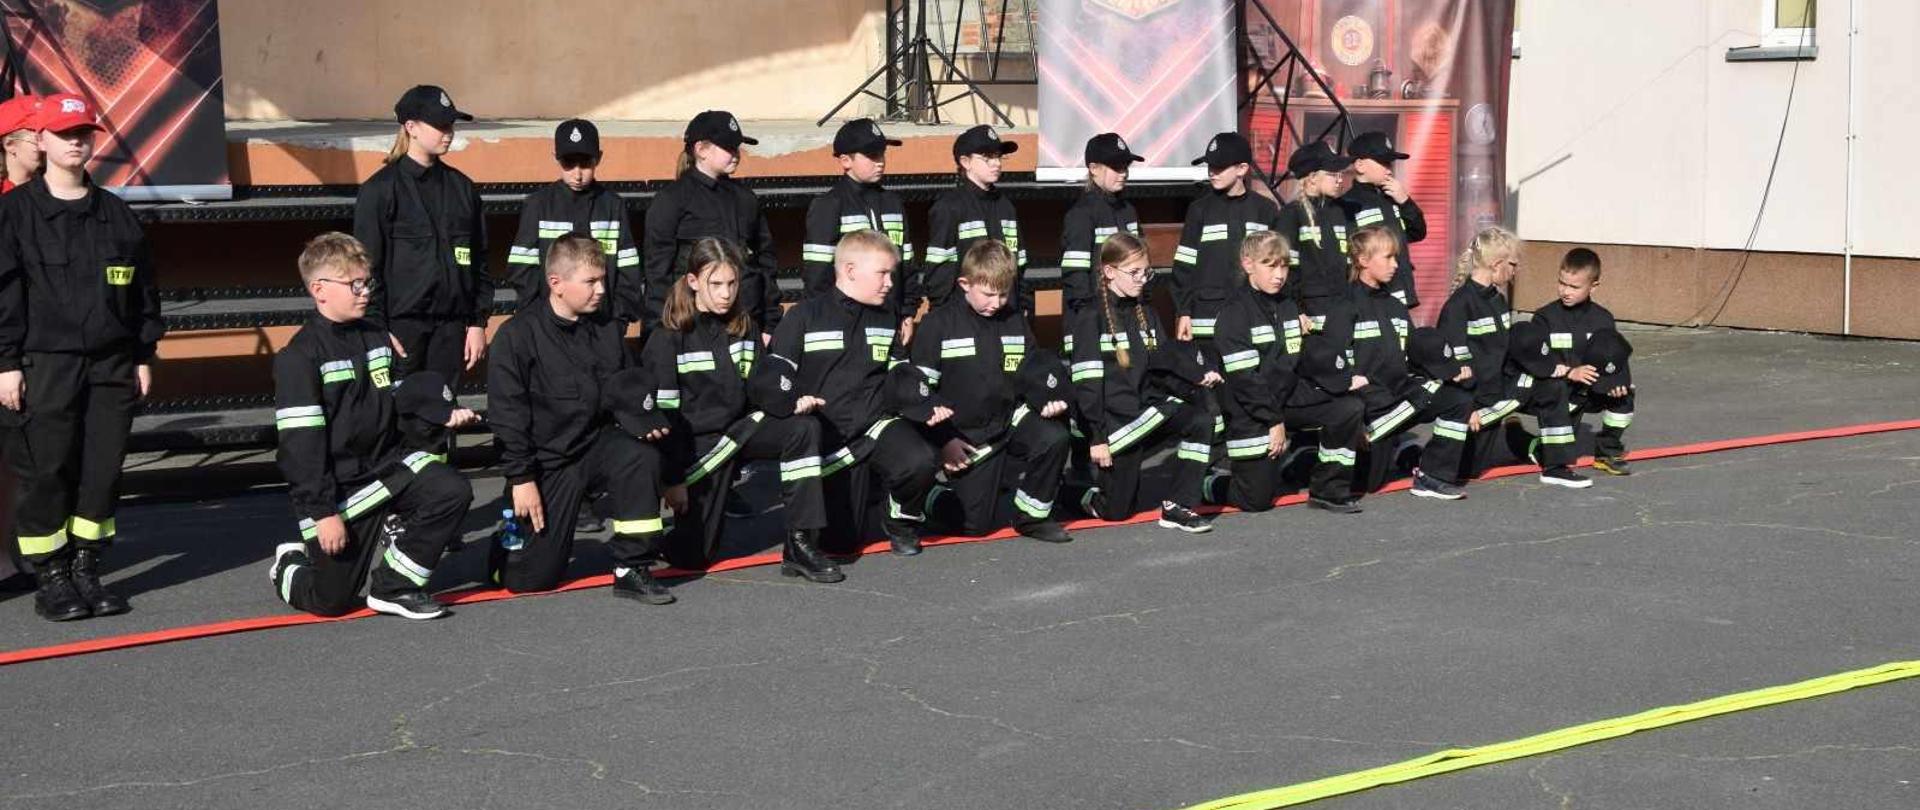 Przed sceną znajduje sie dziecięca drużyna pożarnicza. Członkowie drużyny ubrani są w mundurki koszarowe. Pierwszy szereg klęczy na czerwonym wężu, drugi - stoi. W składzie drużyny są zarówno dziewczęta jak i chłopcy.